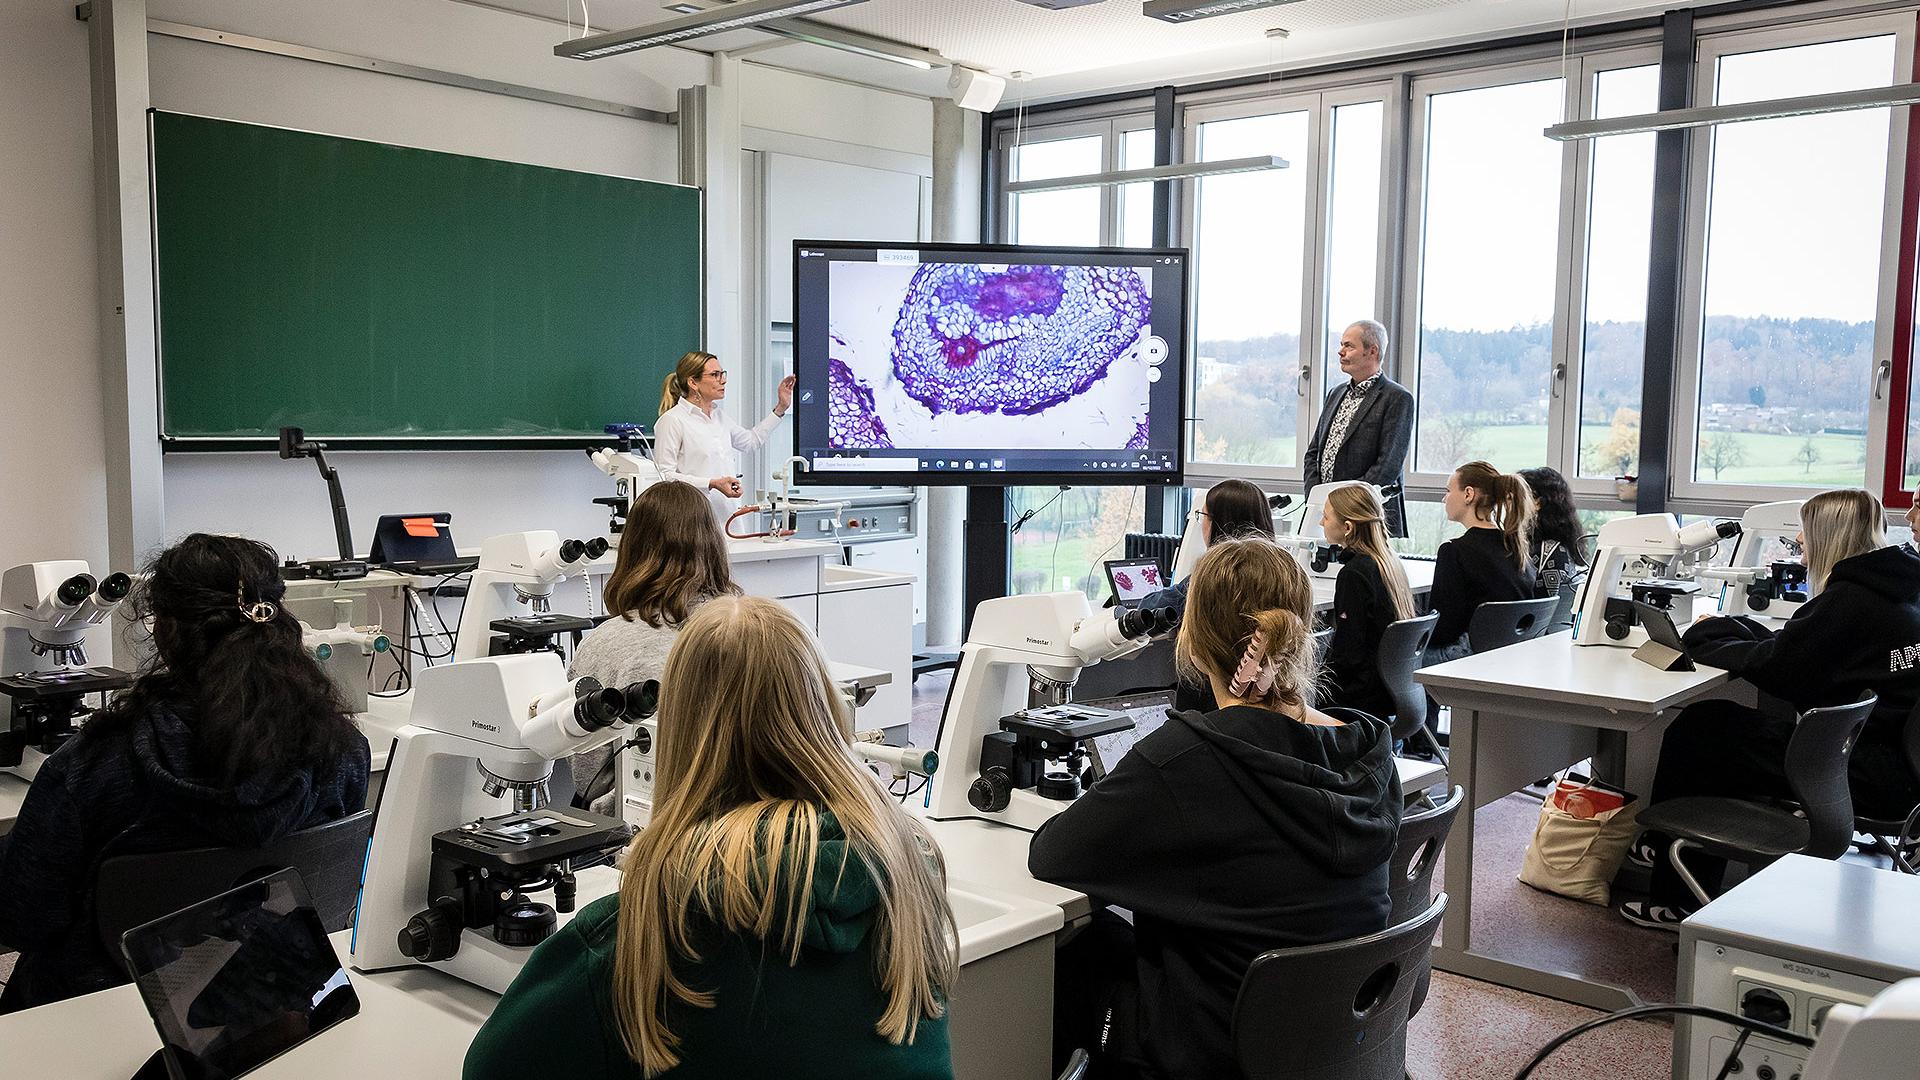 Aalen: microscópios novos para o ensino modernizado